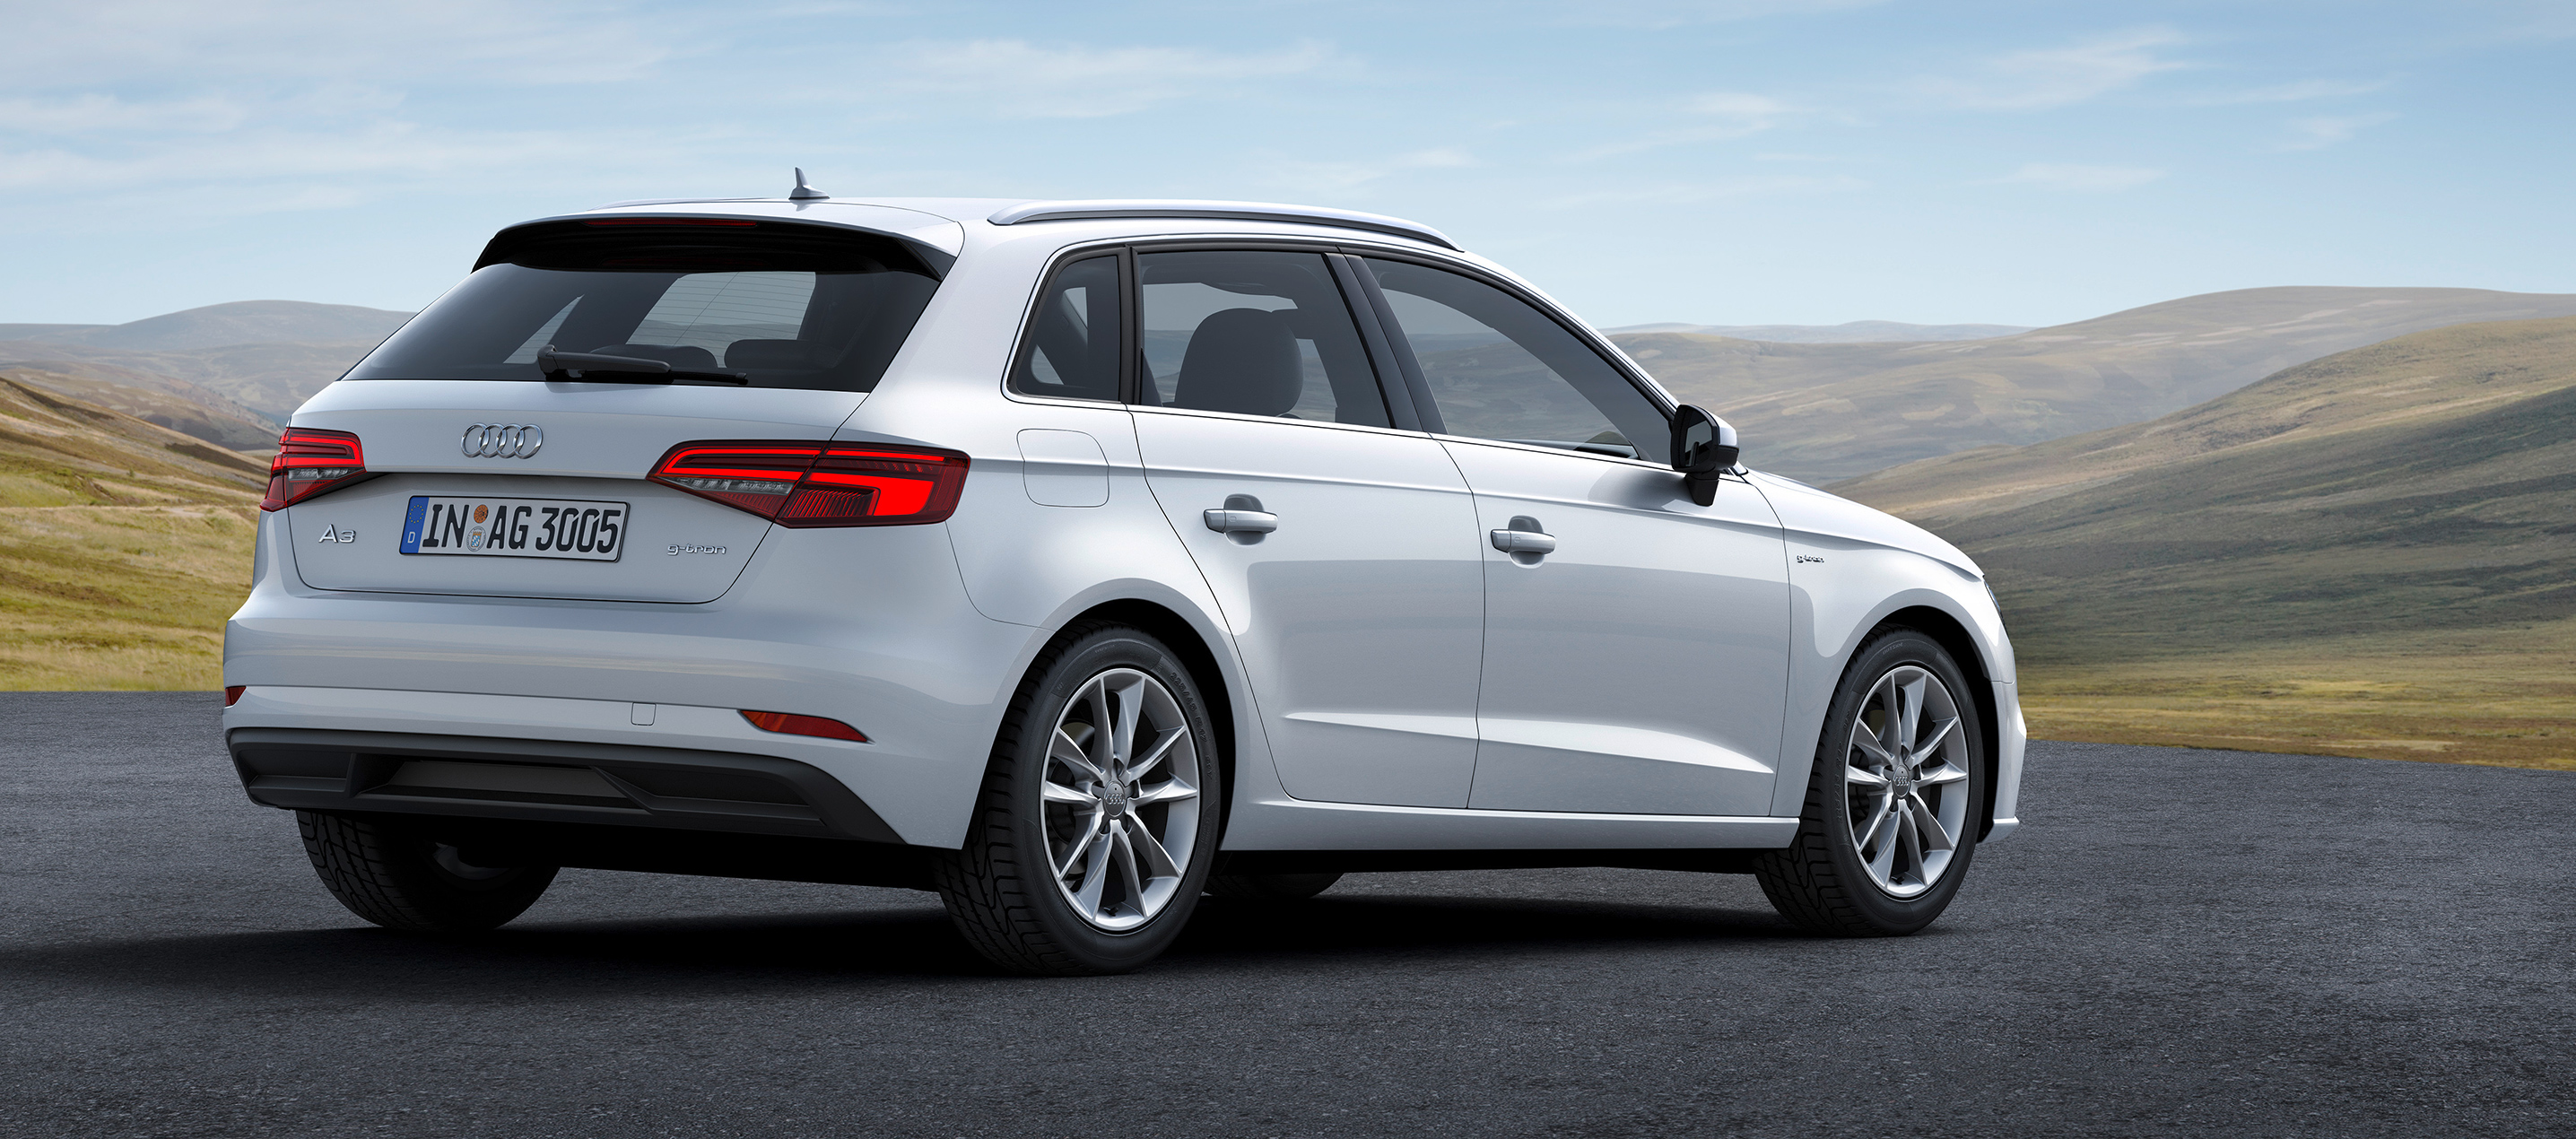 Audi G-Tron ya disponible en el mercado español